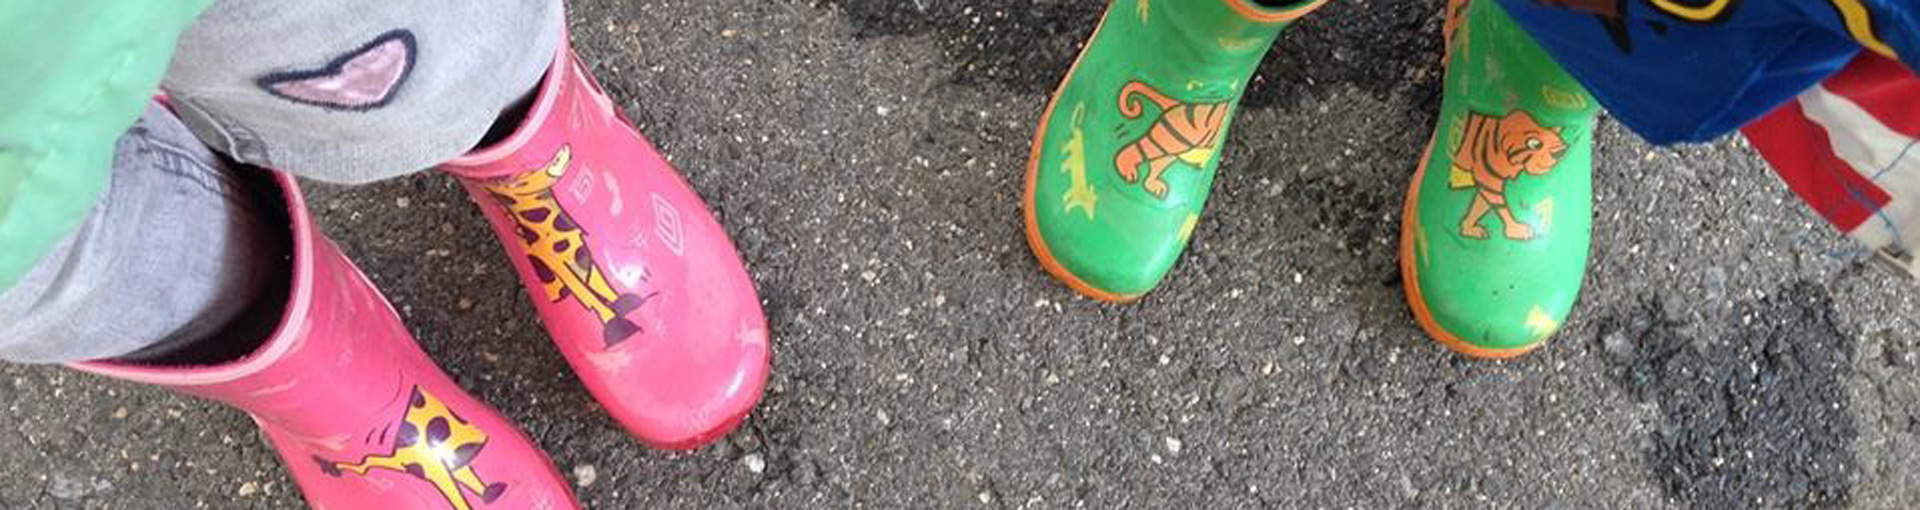 Chaussés de leurs bottes de couleurs, les enfants vont à pied à l'école